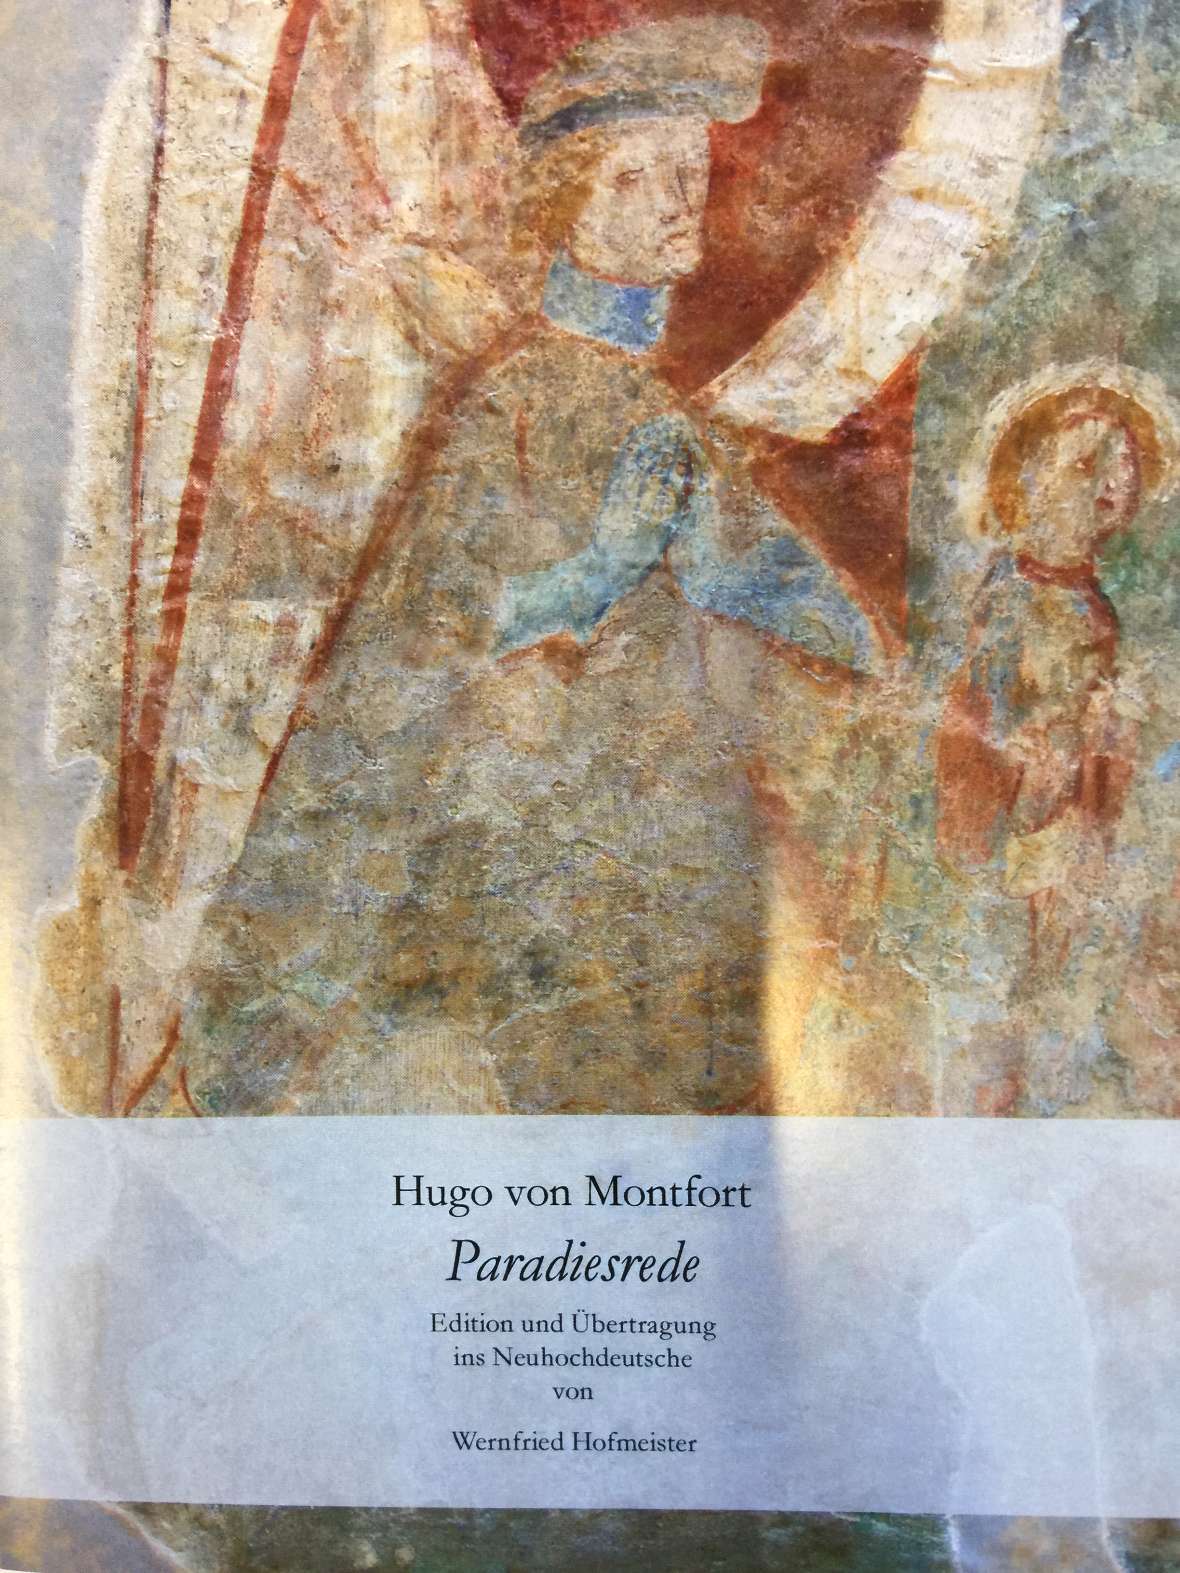 Wernfried Hofmeisters Ausgabe und Übersetzung des Paradieswegs von Hugo von Montfort